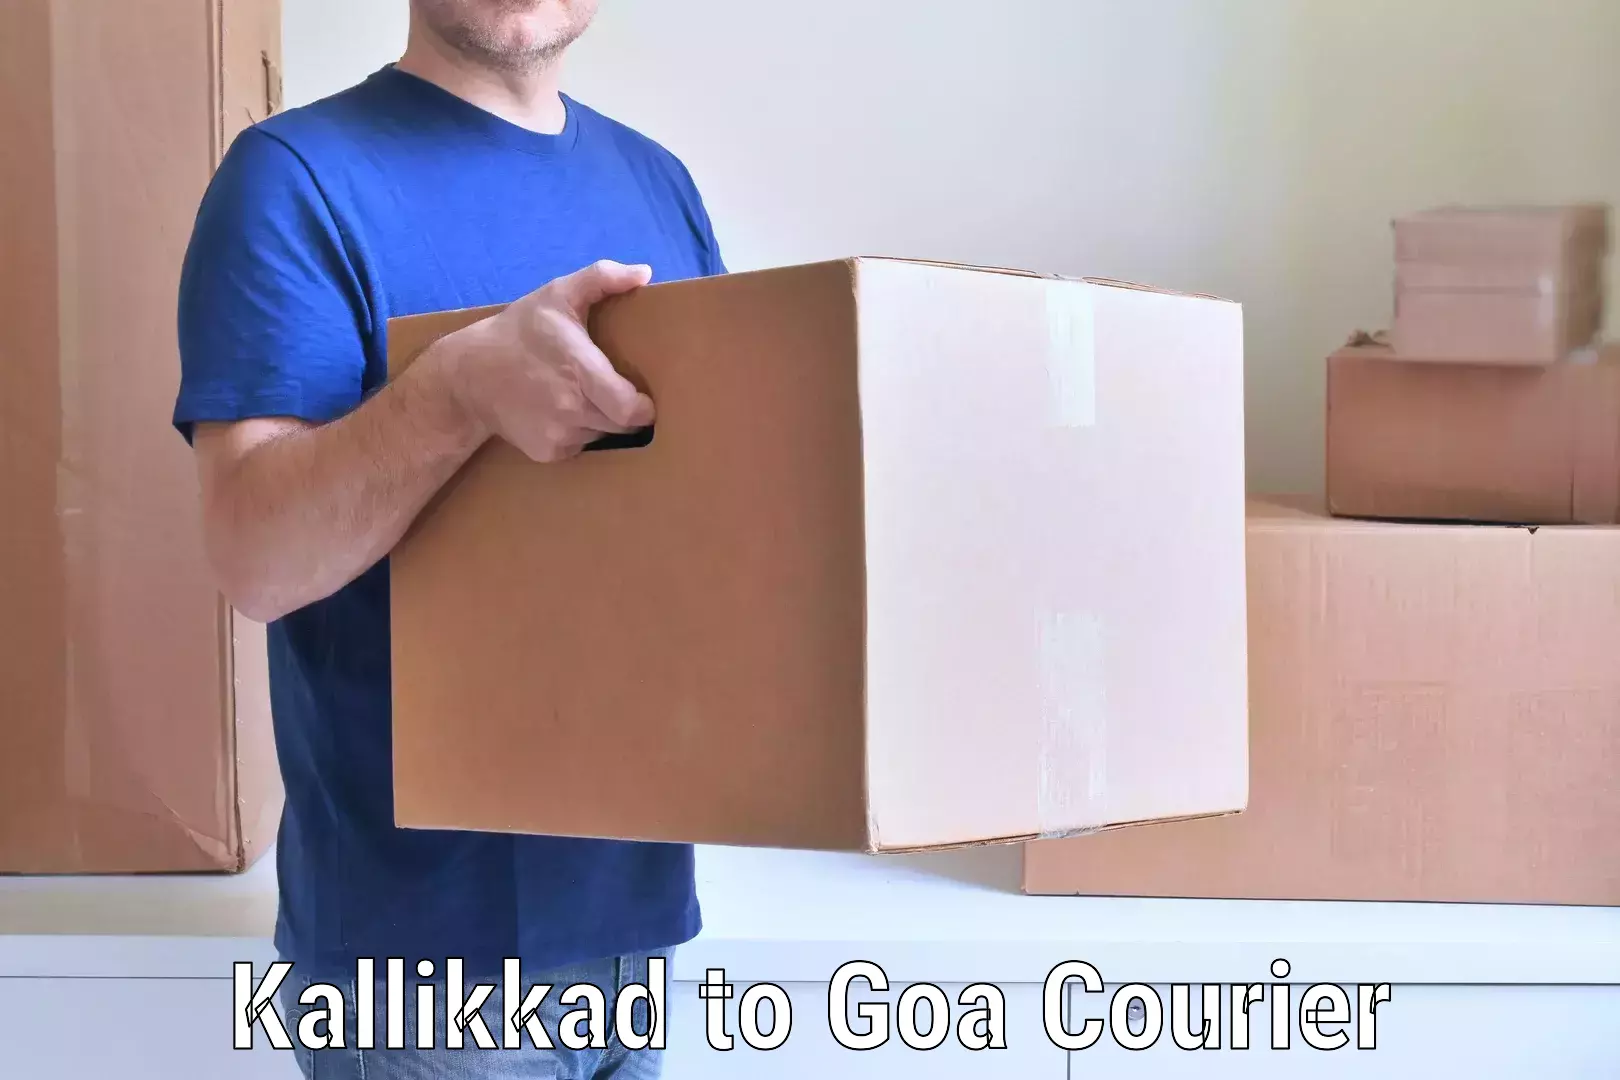 Budget-friendly movers Kallikkad to IIT Goa